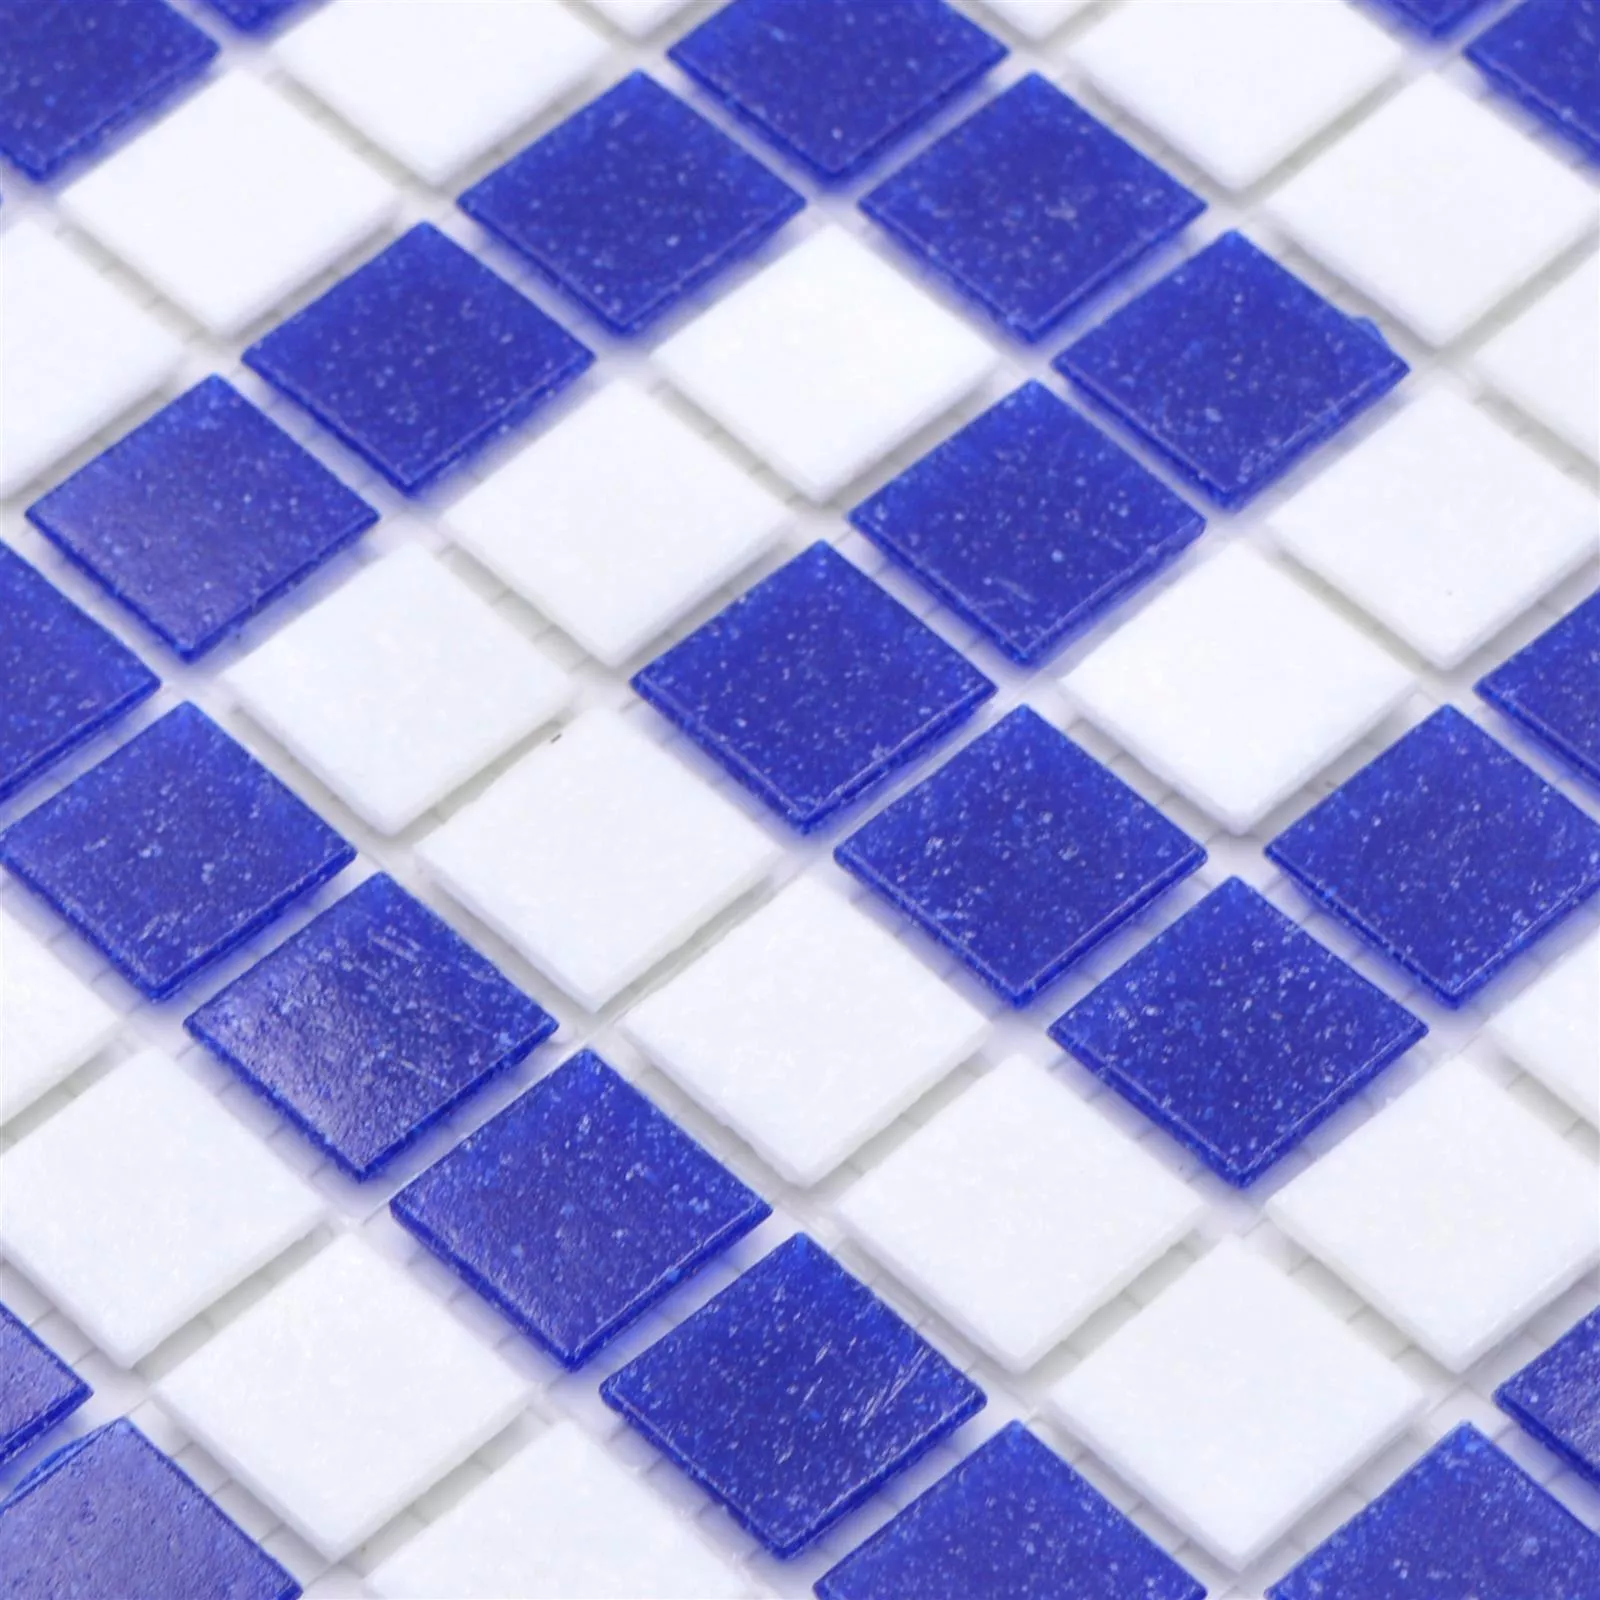 Muster von Schwimmbad Pool Mosaik Filyos Blau Weiß Papierverklebt